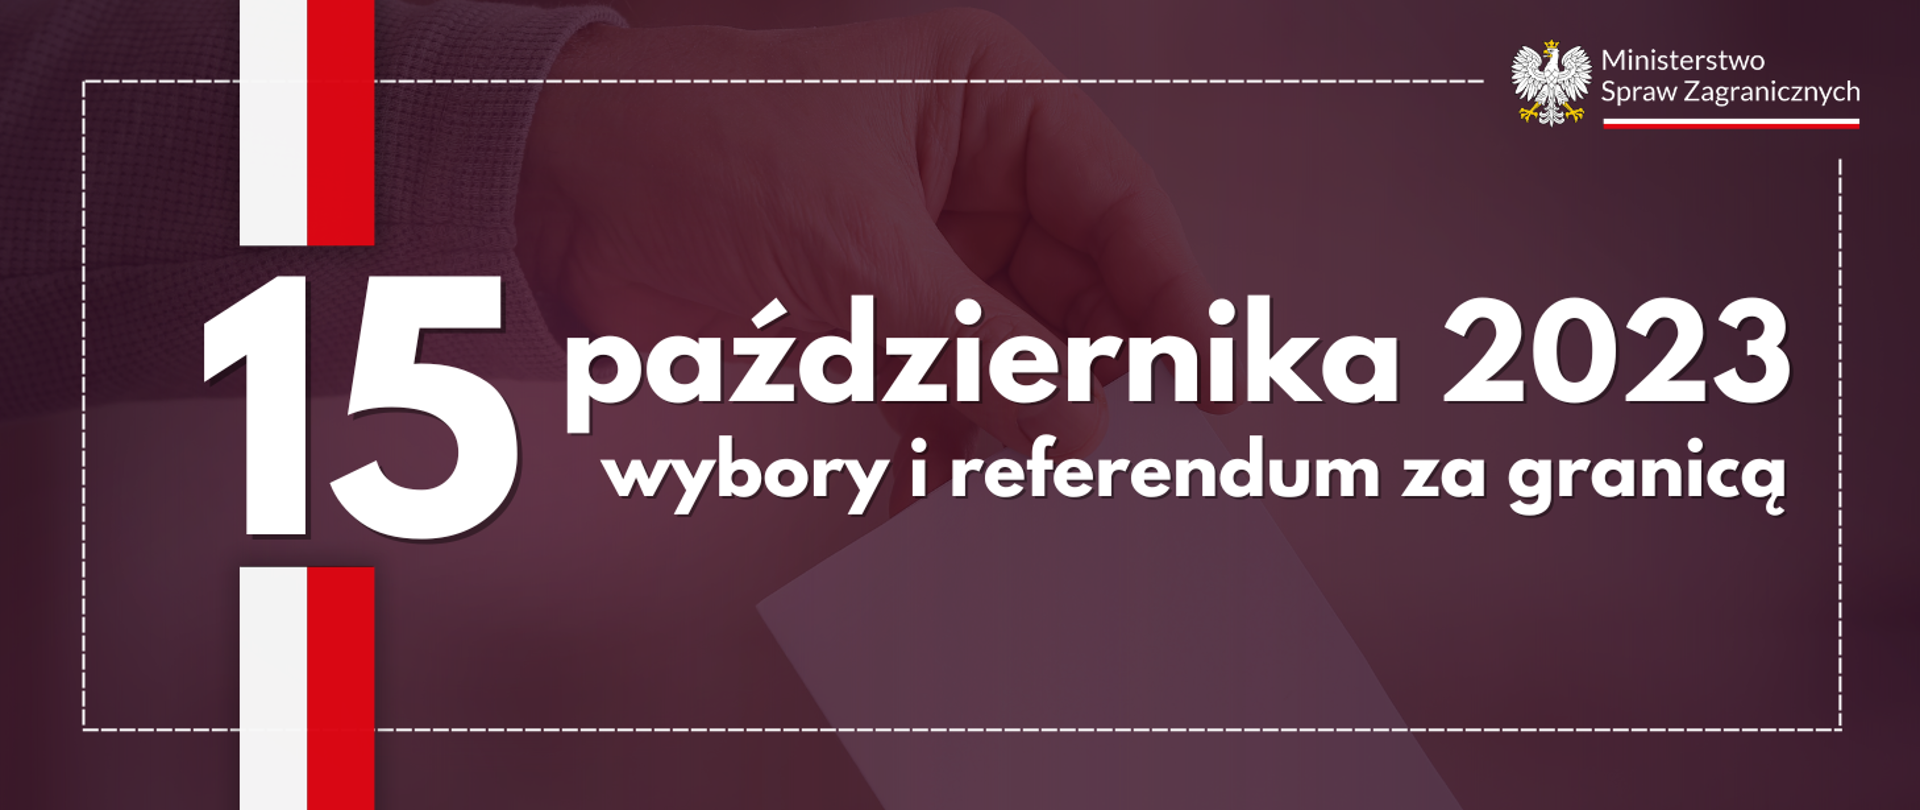 Napis 15 października 2023 wybory i referendum za granicą 